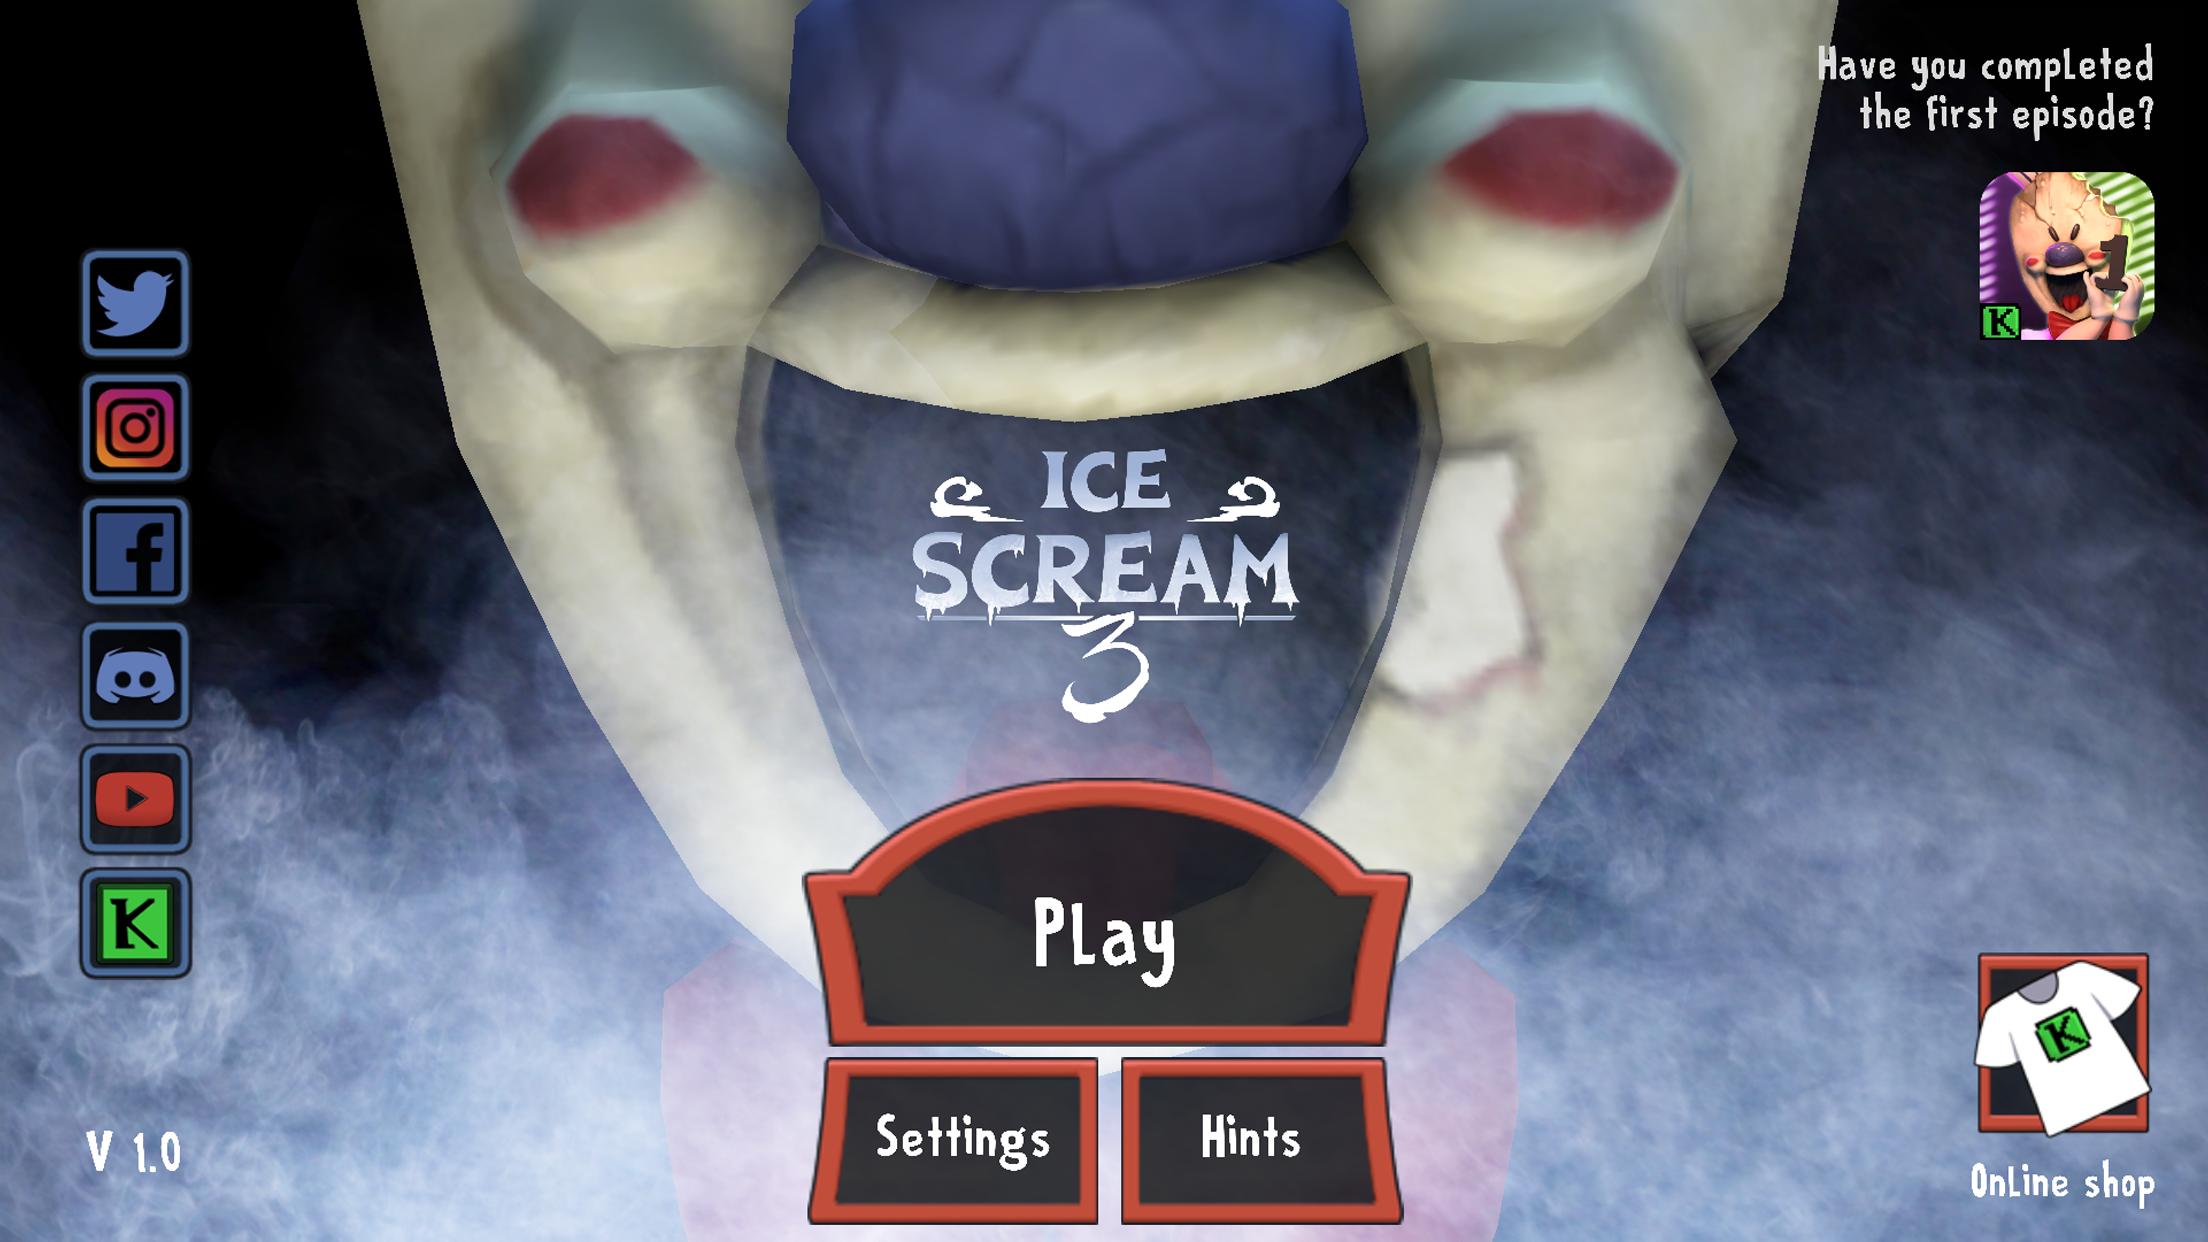 Топси мороженщик 3. Игра Ice Cream Horror. Ice Cream 1 игра род мороженщик. Мороженщик Ice Scream 3.